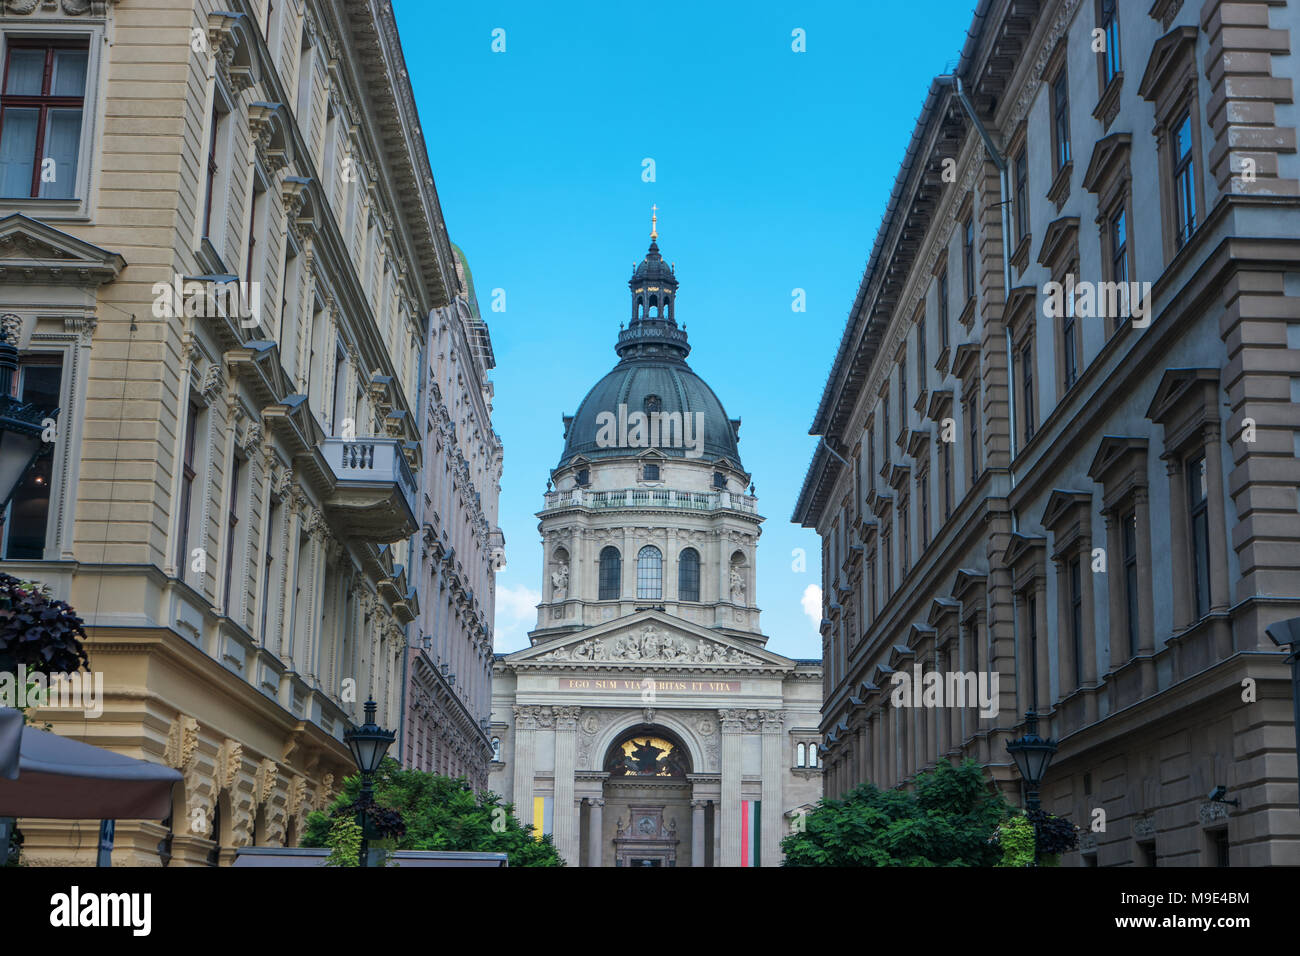 Basílica de San Esteban en Budapest, Hungría. La basílica de San Istvan es una de las más famosas de Europa monumentos y lugares populares entre los turistas. Ci Foto de stock